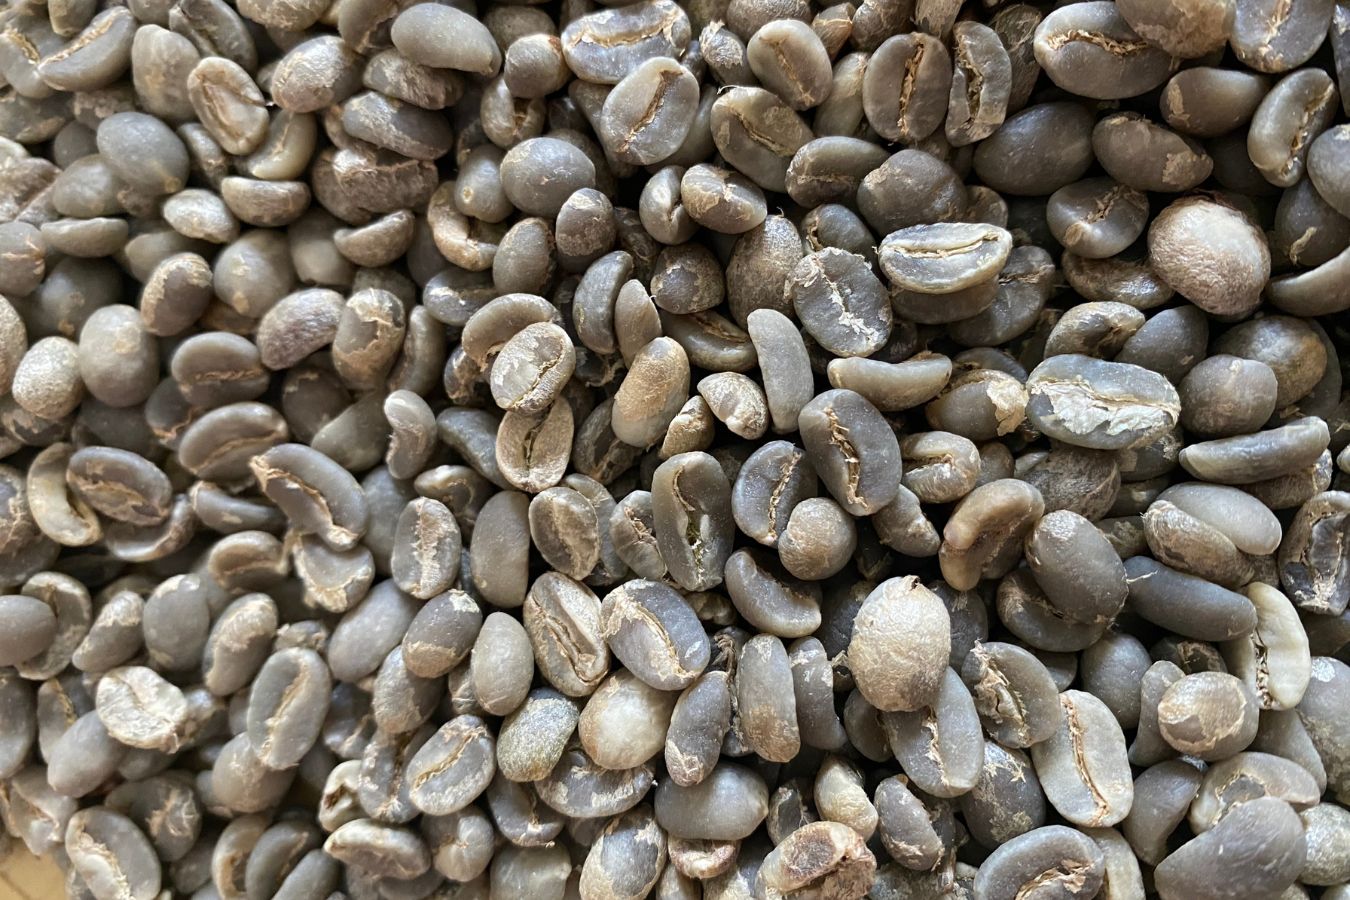 Sumatra Coffee